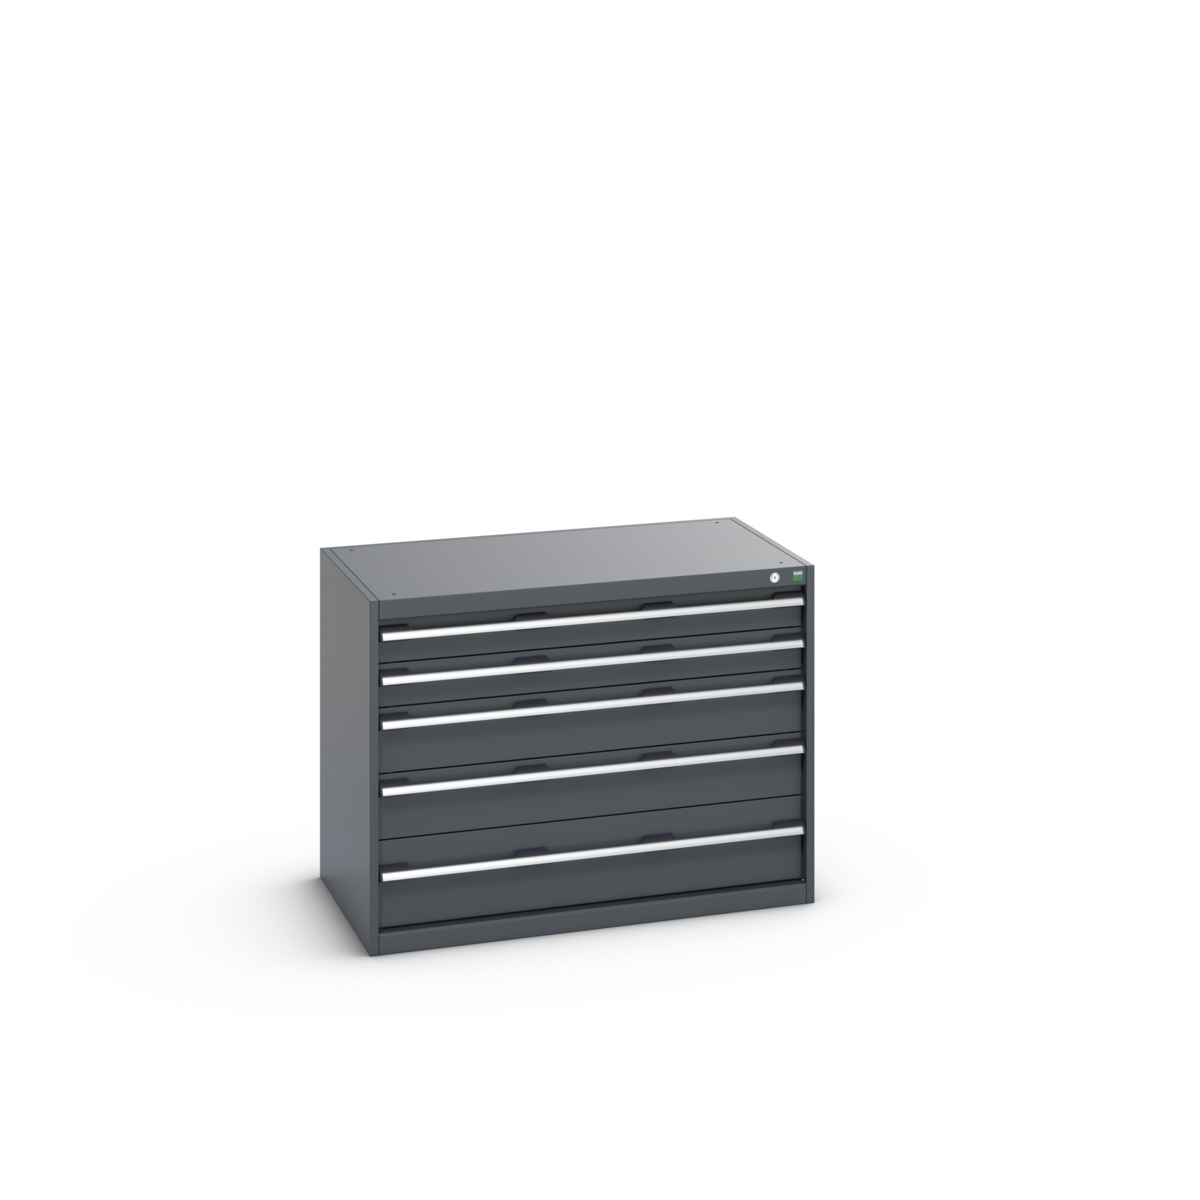 40021009.77V - cubio drawer cabinet